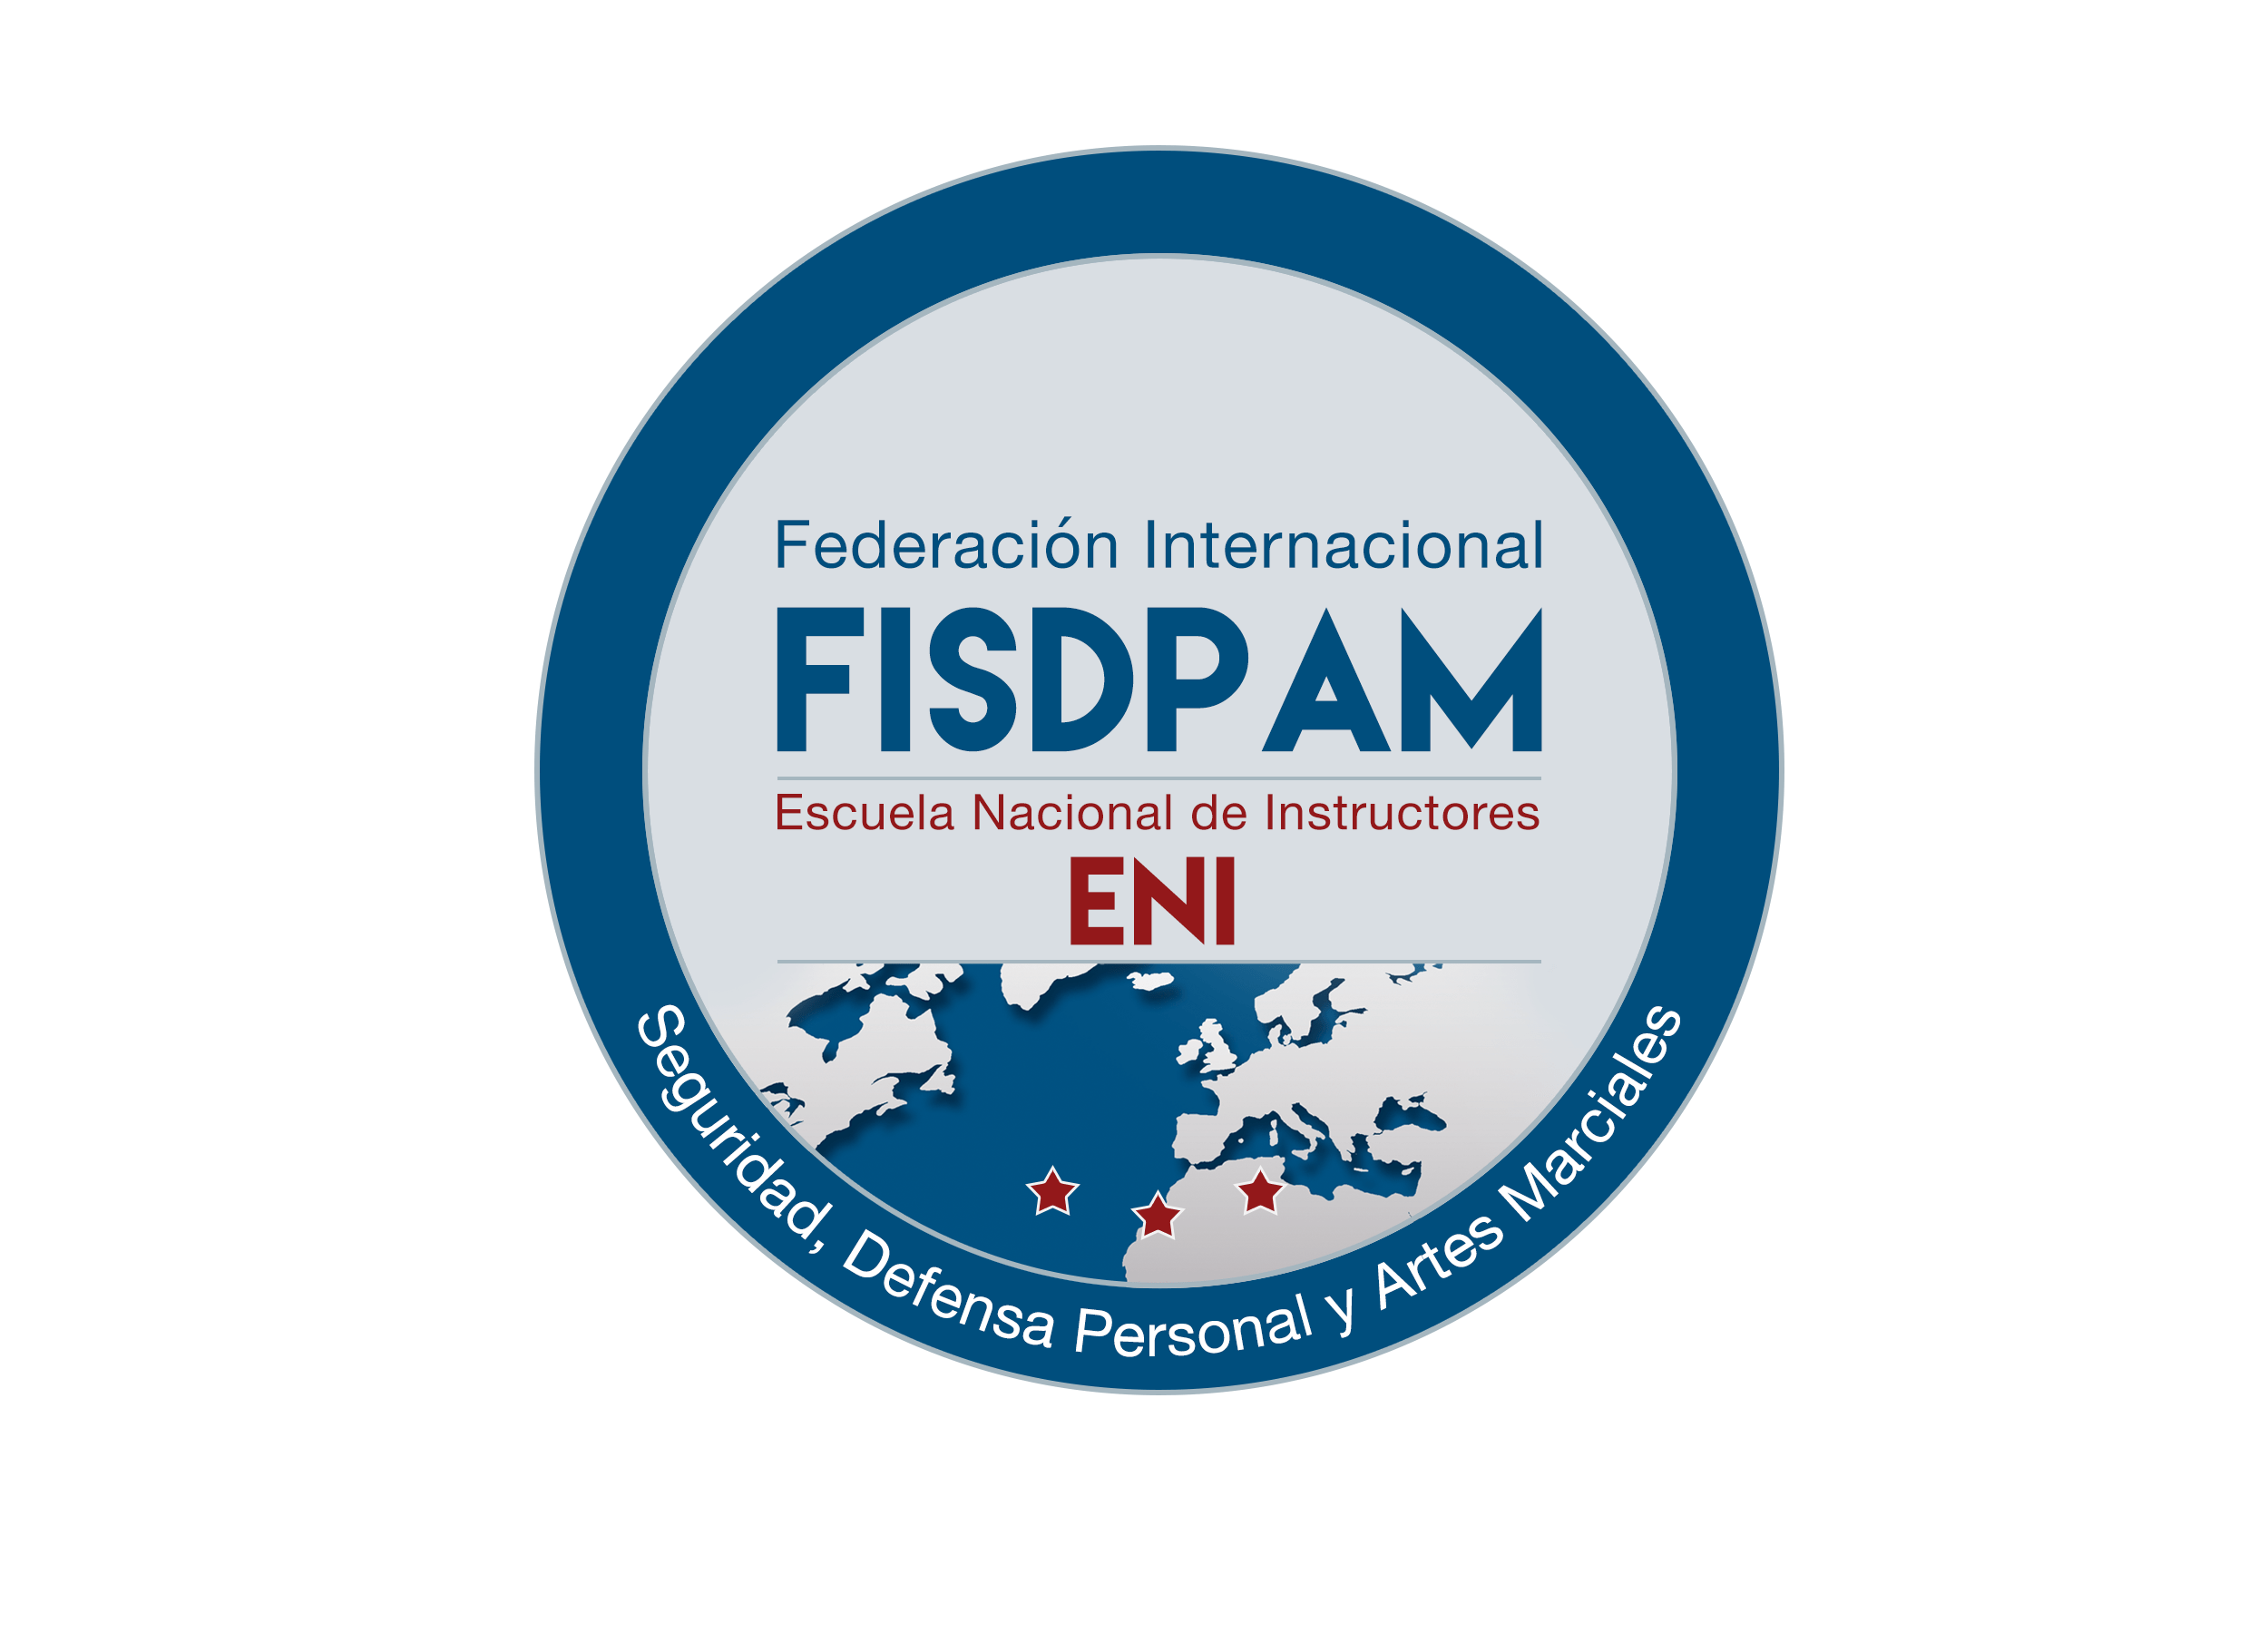 FISDPAM_ENI